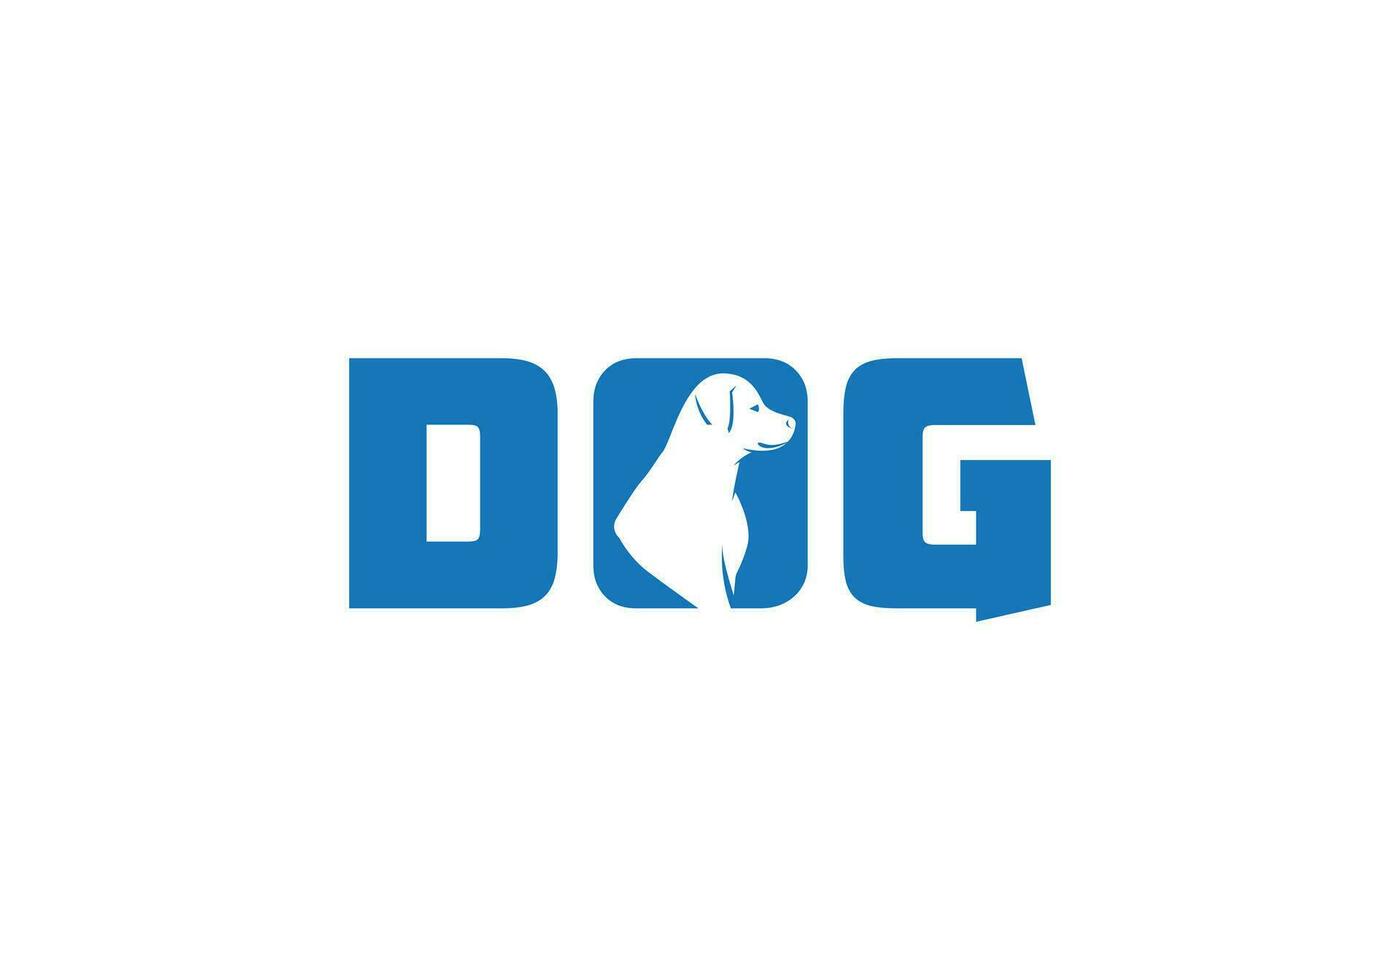 creativo perro y texto adicional animal logo icono diseño vector